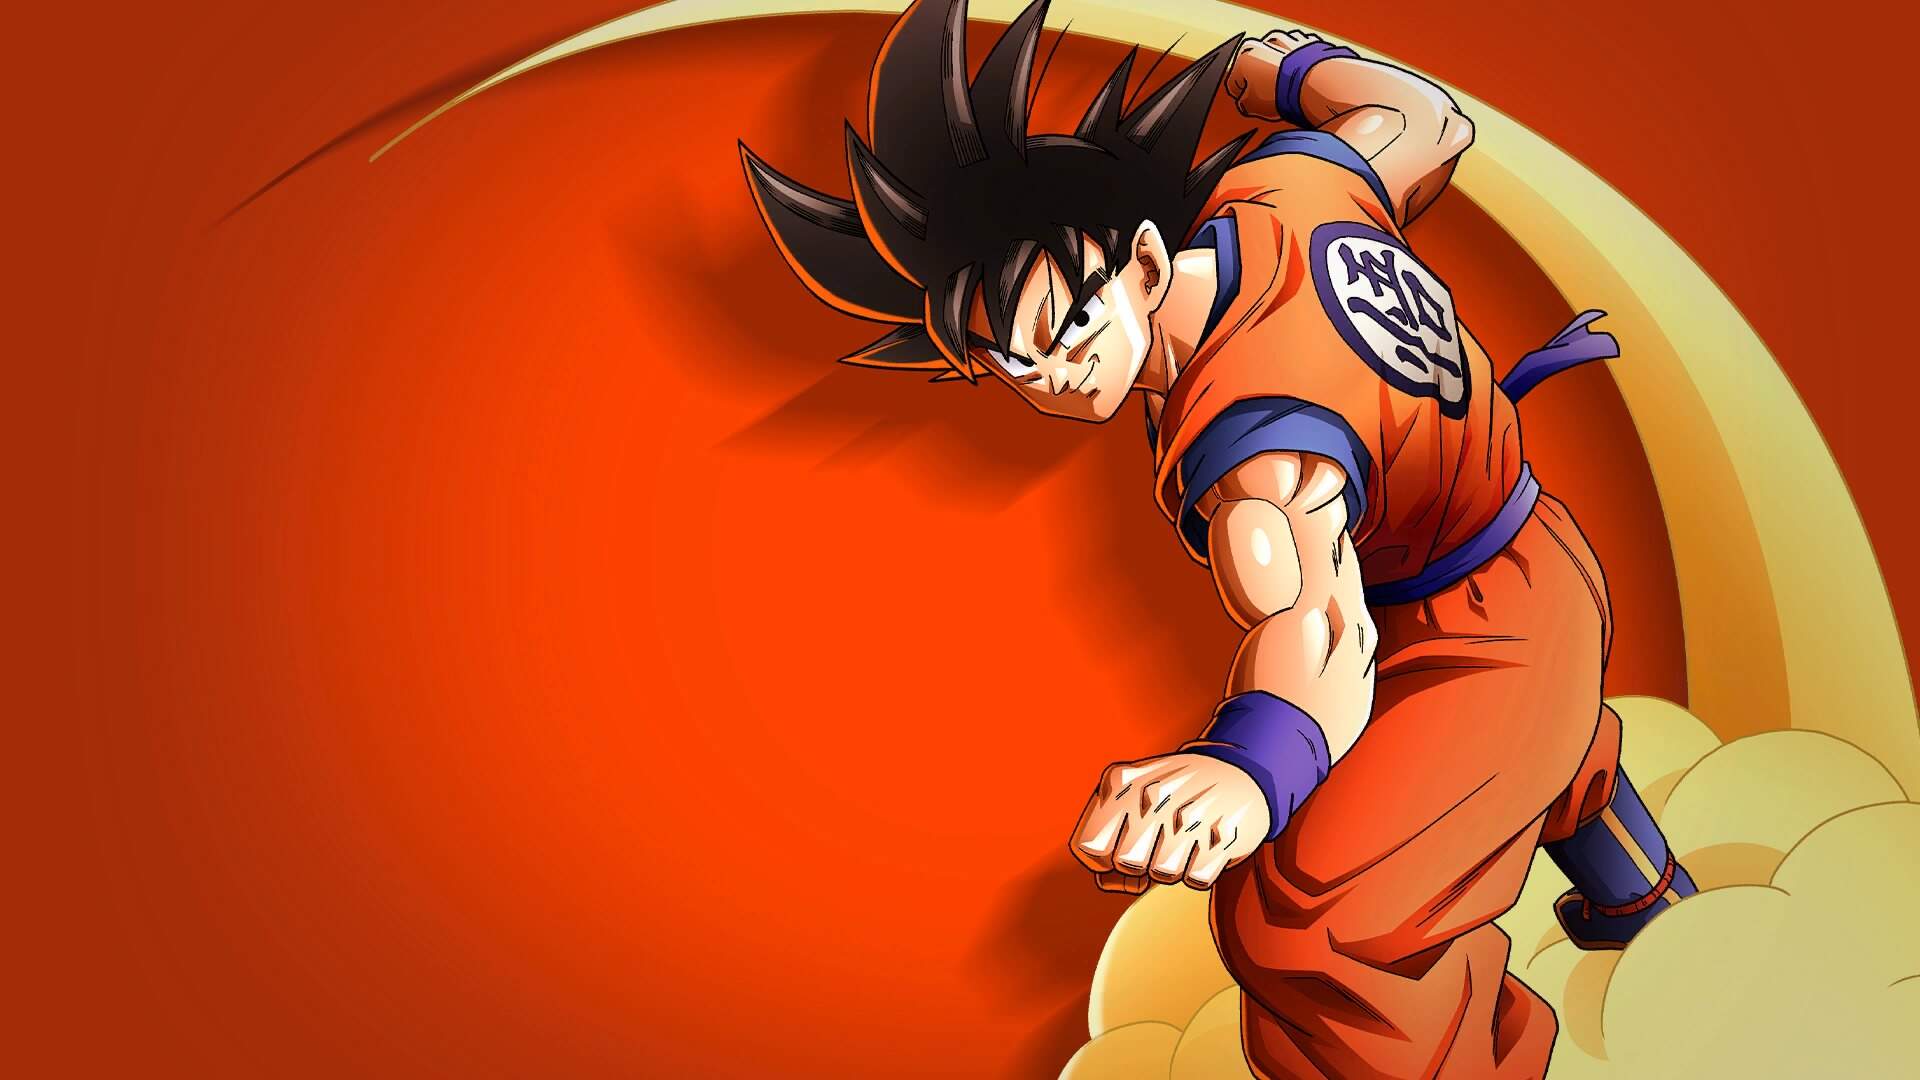 Ao longo das 40 horas de jogo, você comanda Goku e outros personagens icônicos, como Gohan e Trunks